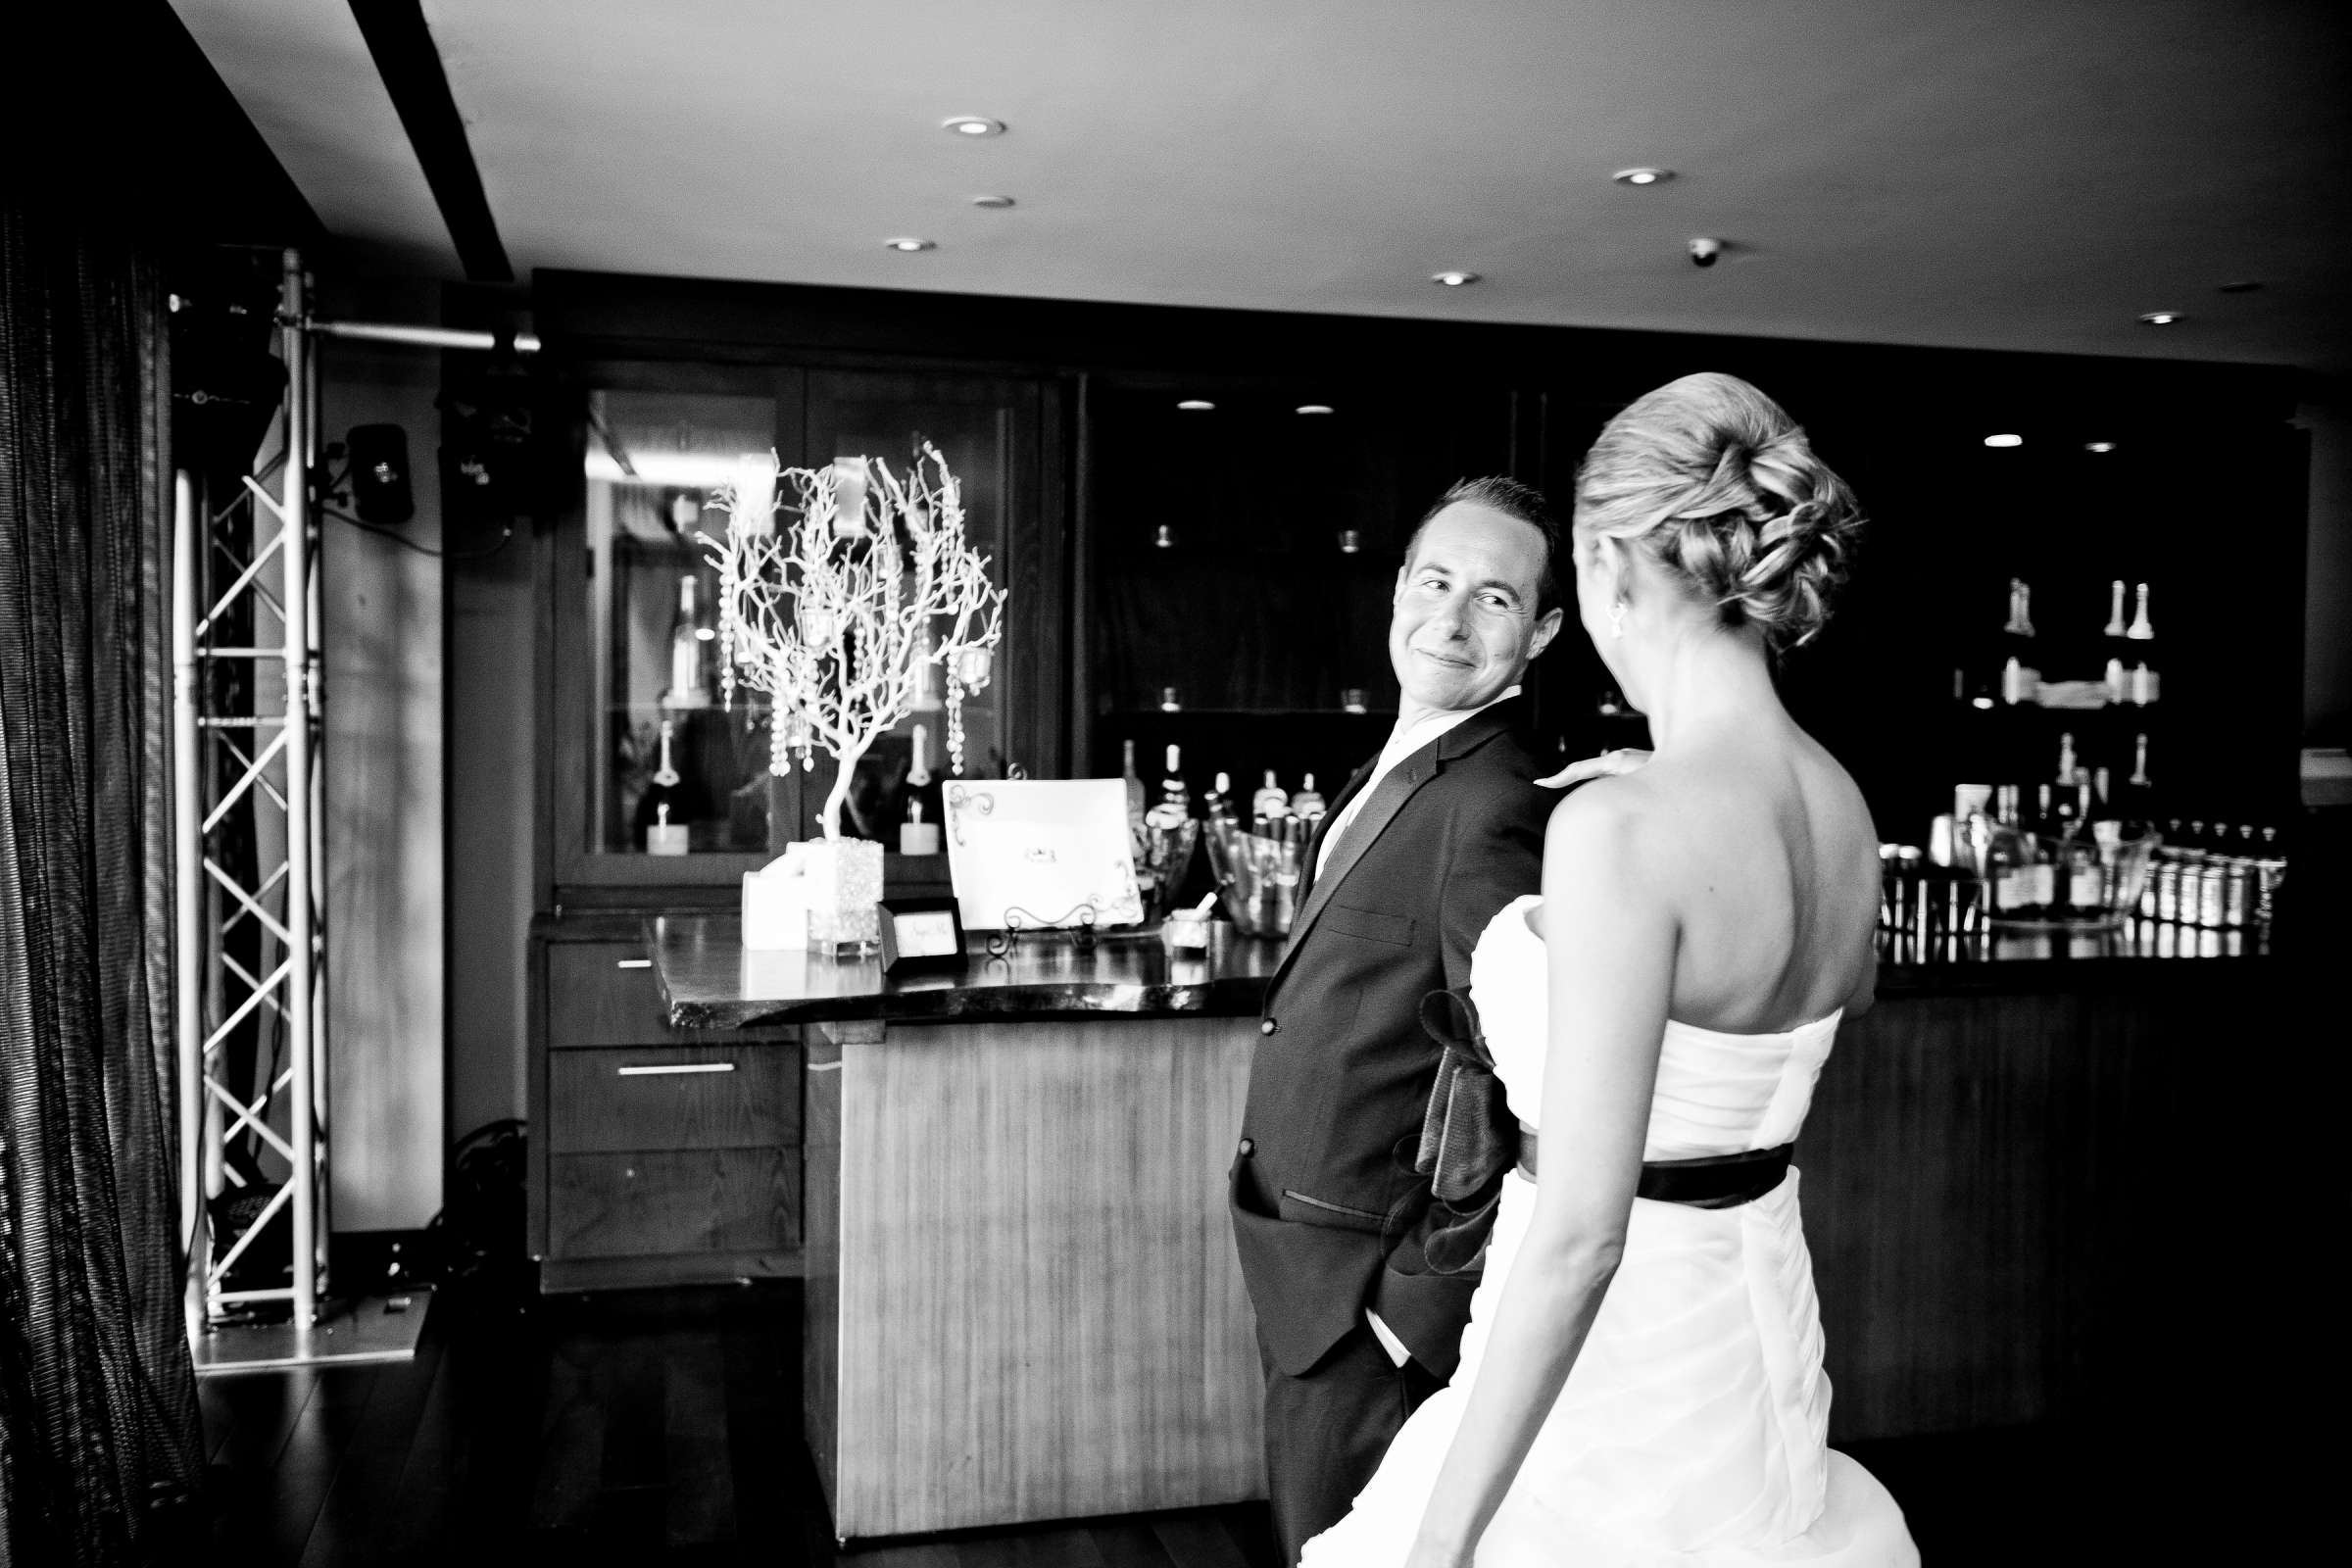 Hotel Palomar San Diego Wedding, Liz and Jeff Wedding Photo #205374 by True Photography